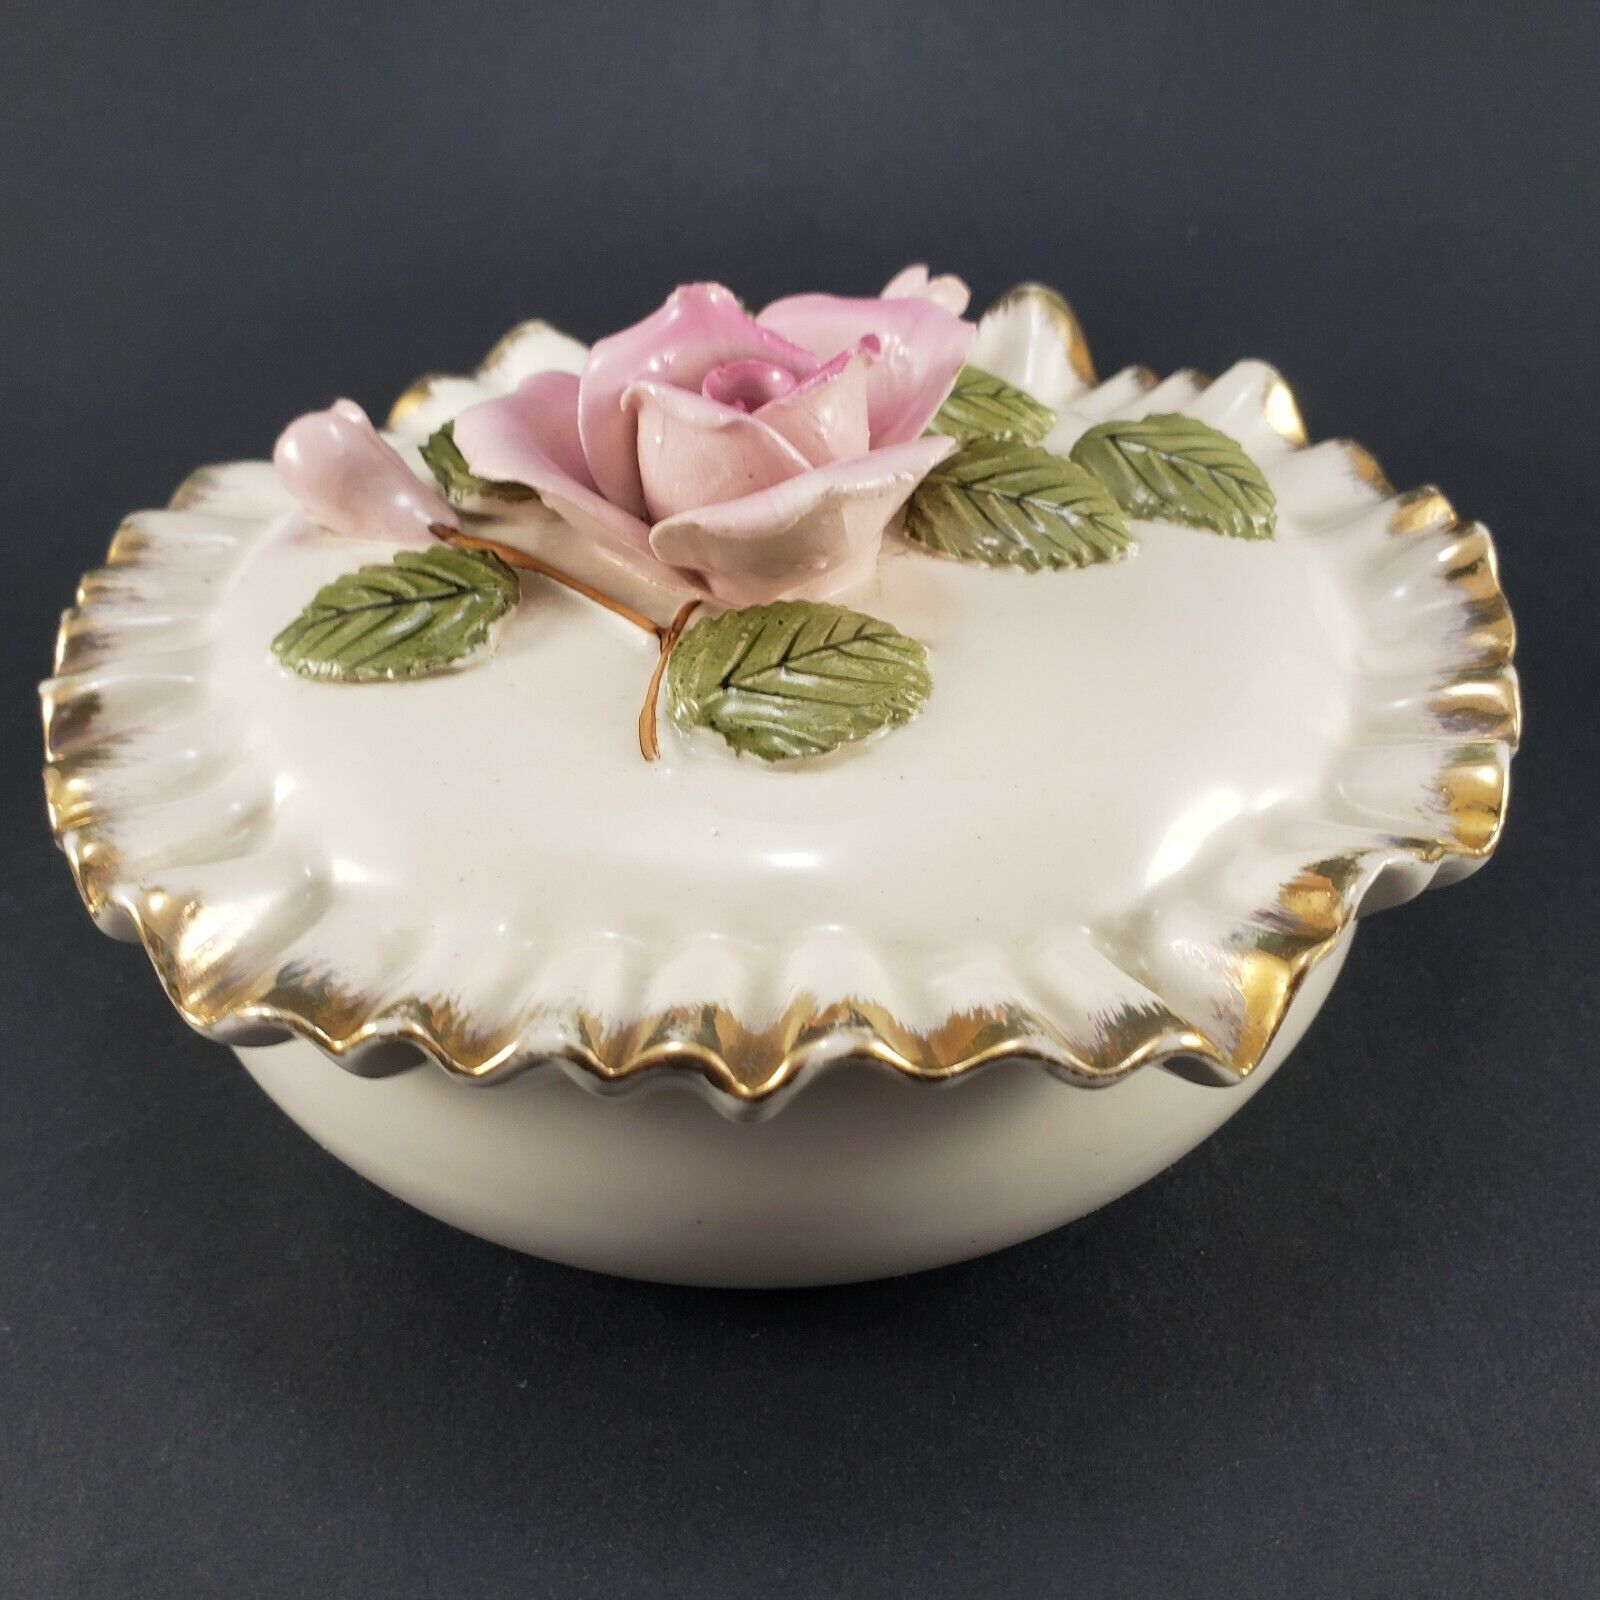 Vintage Porcelain Trinket Dresser Dish 3D Pink Rose & Leaves Scalloped Gold Gilt